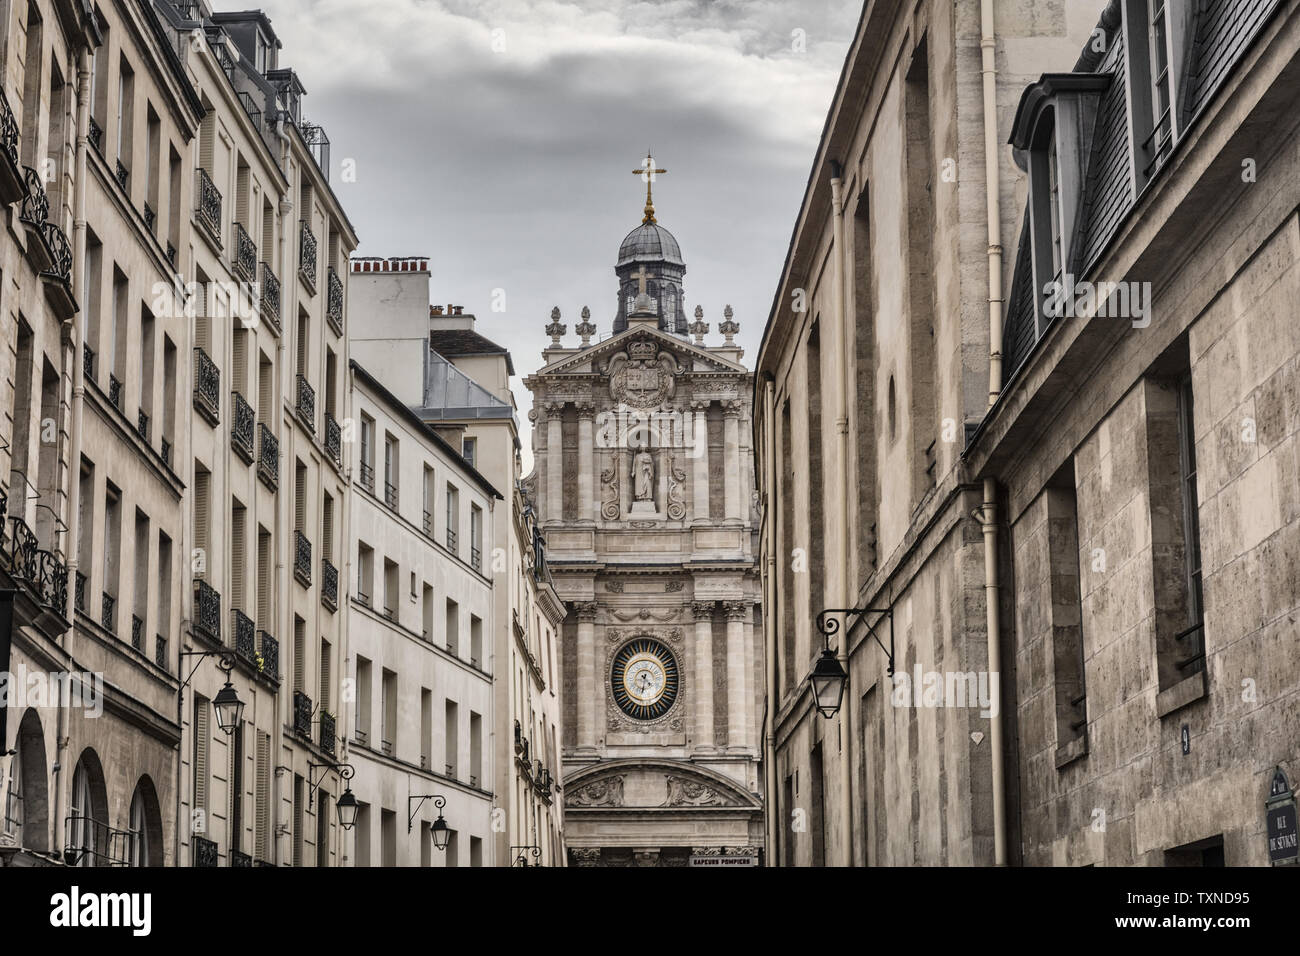 Scenic view of church Eglise Saint-Paul Saint-Louis, Paris, France Stock Photo